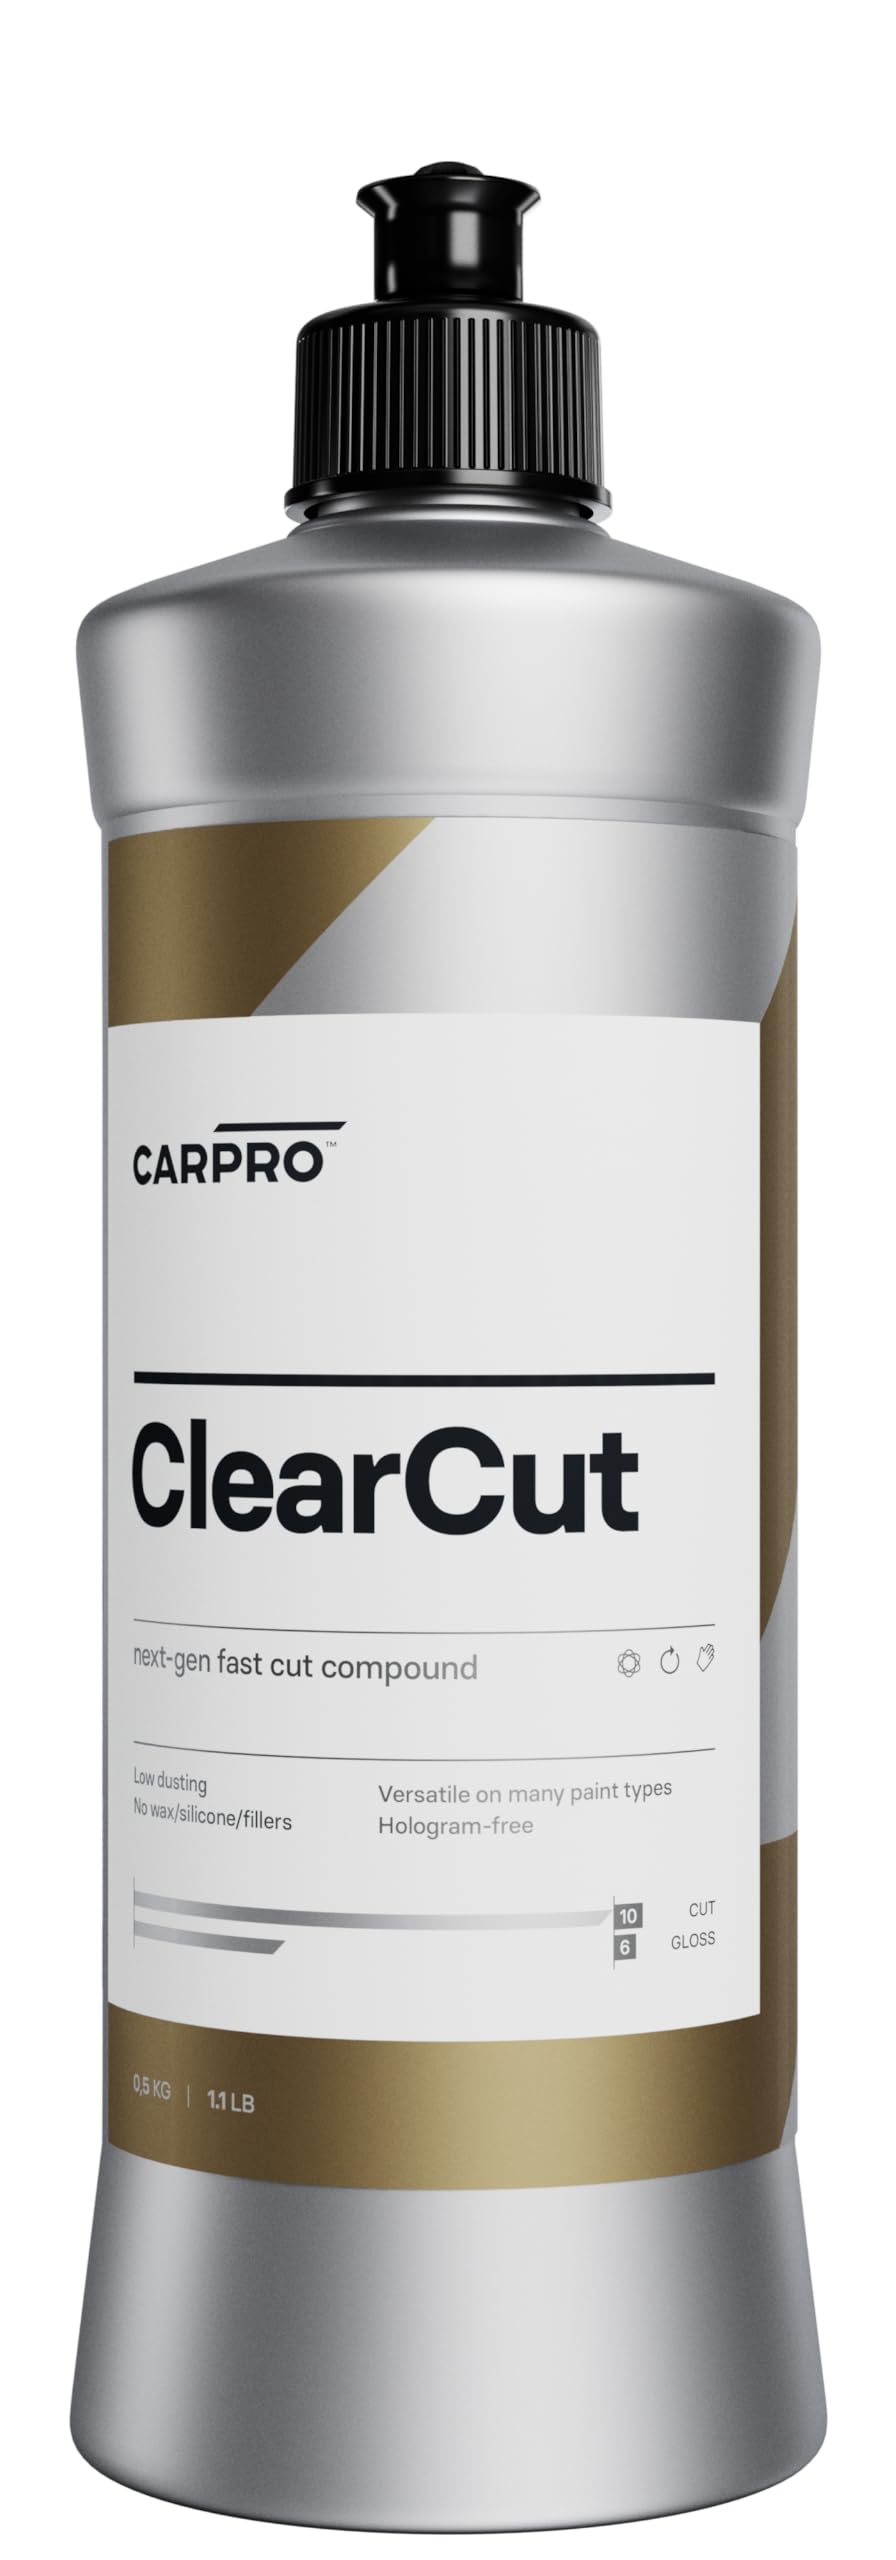 CarPro Schleifpolitur ClearCut Compound von CarPro